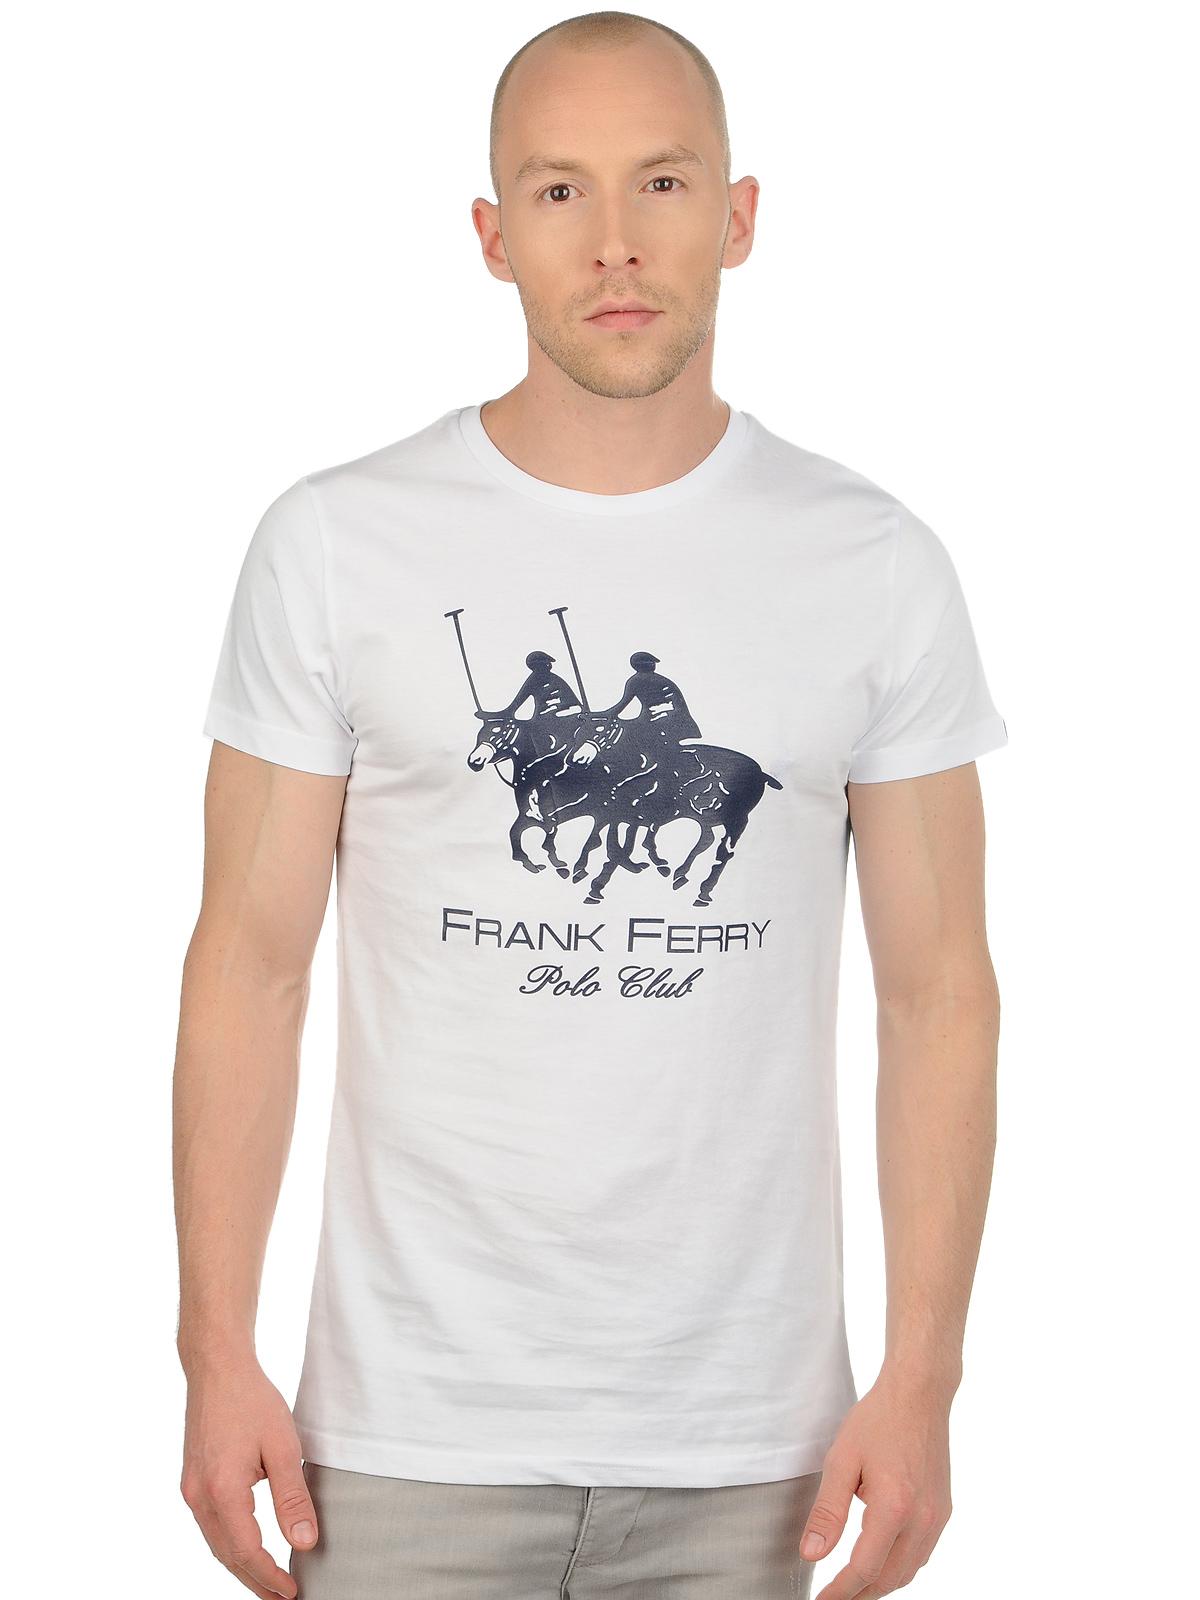 Foto Frank Ferry Polo Club Camiseta blanco XXL